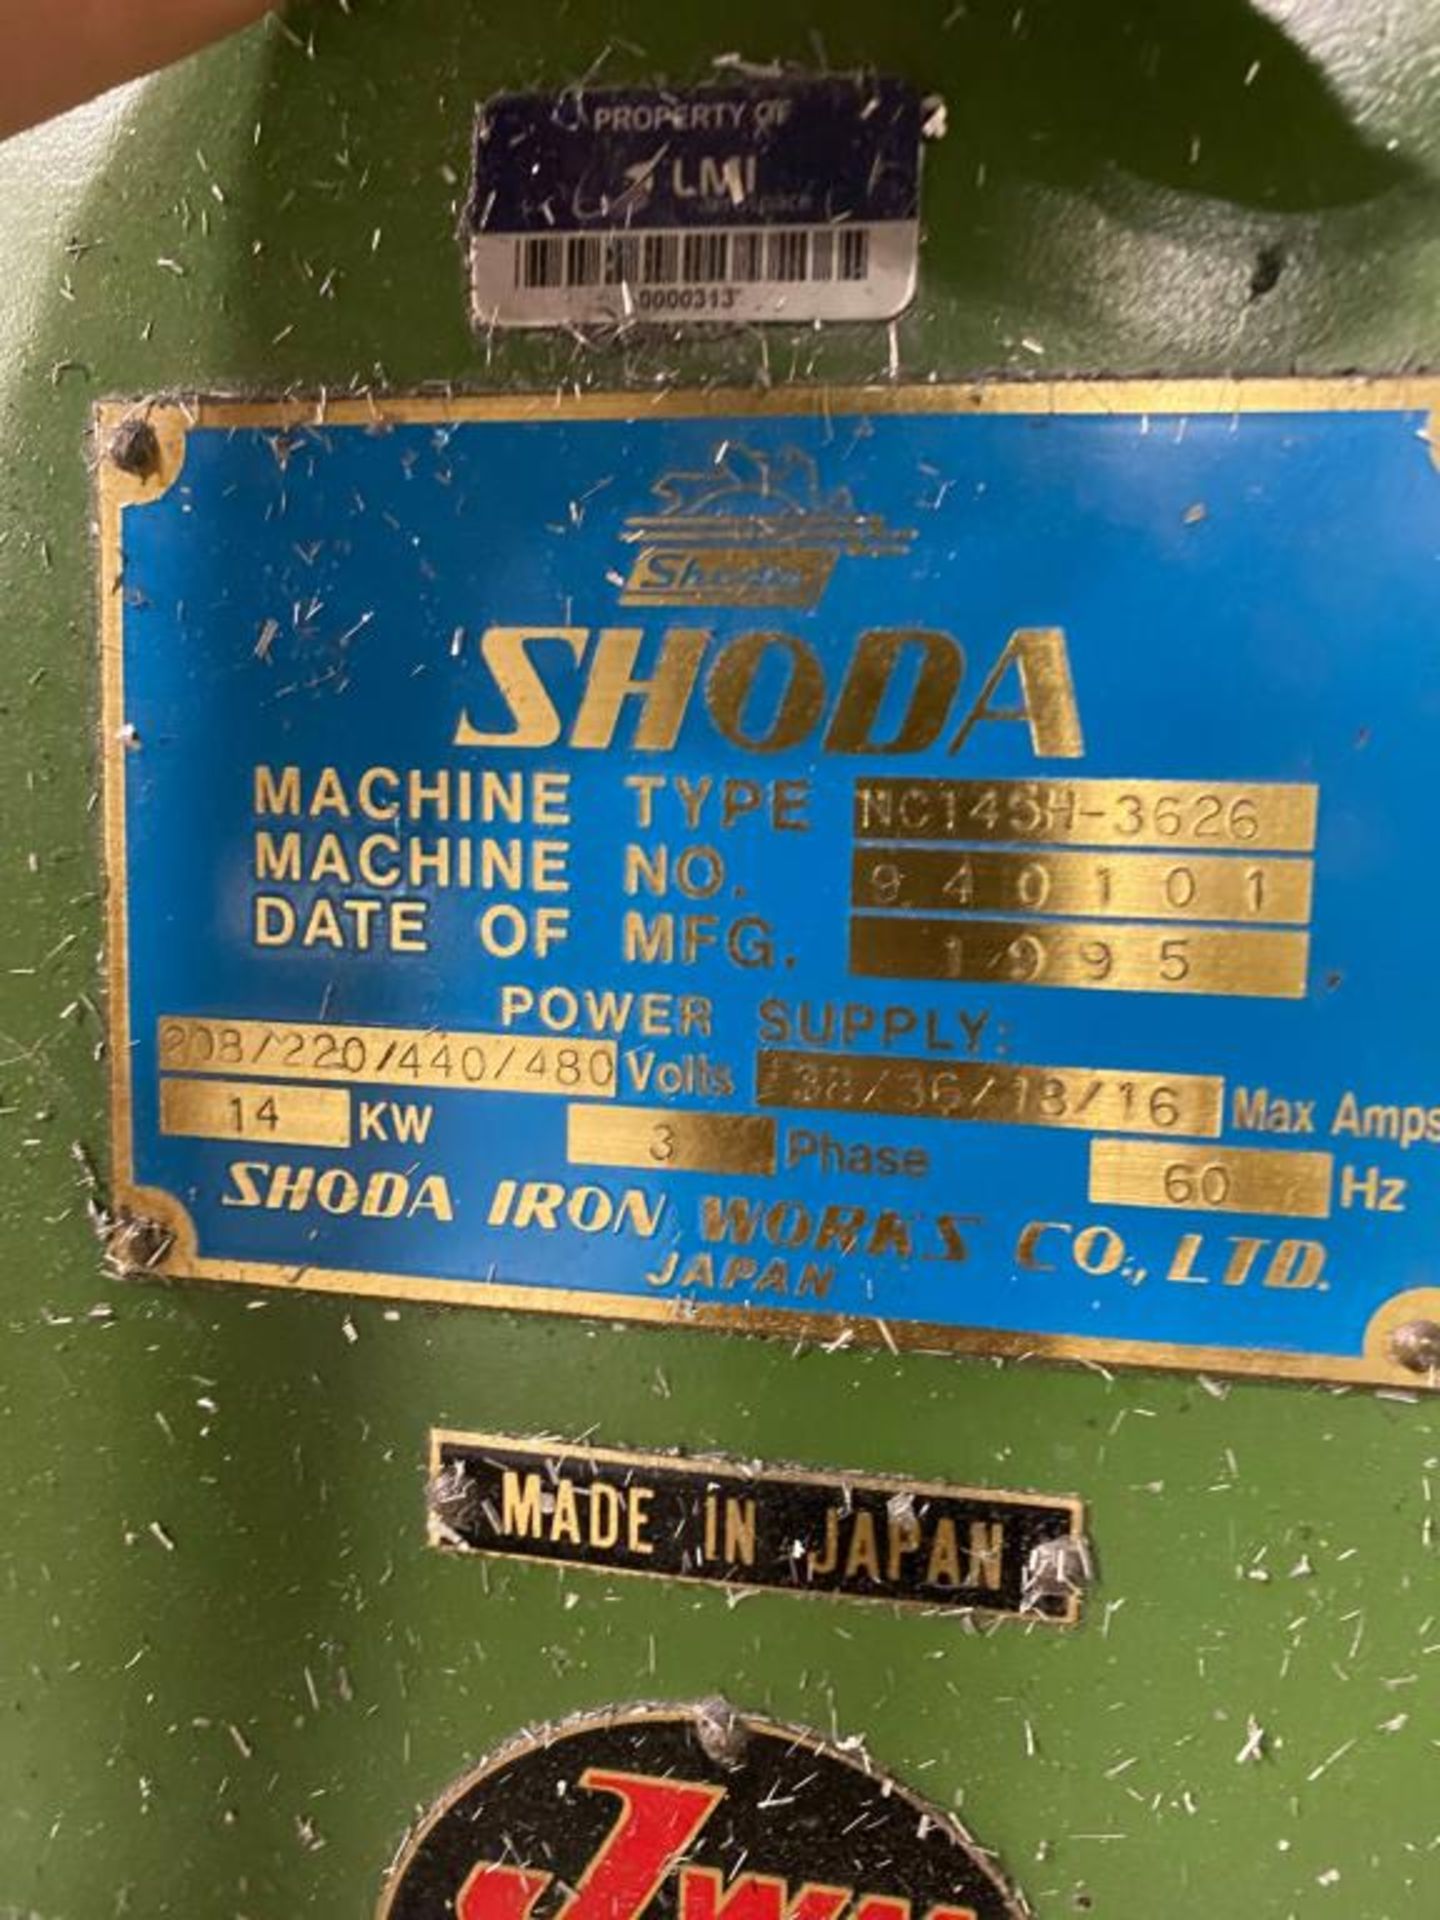 Shoda Iron Works Large Capacity CNC Router Machine - Image 6 of 6